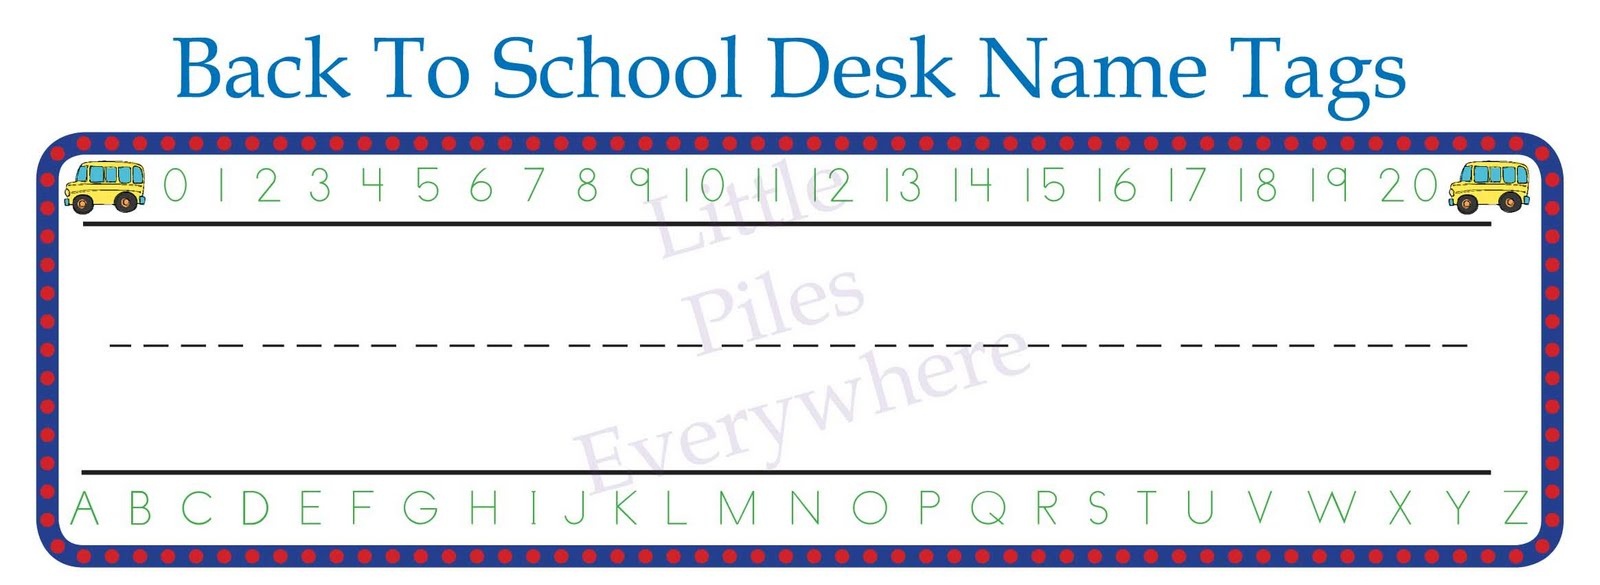 Free Printable Name Tags For School Desks Free Printable